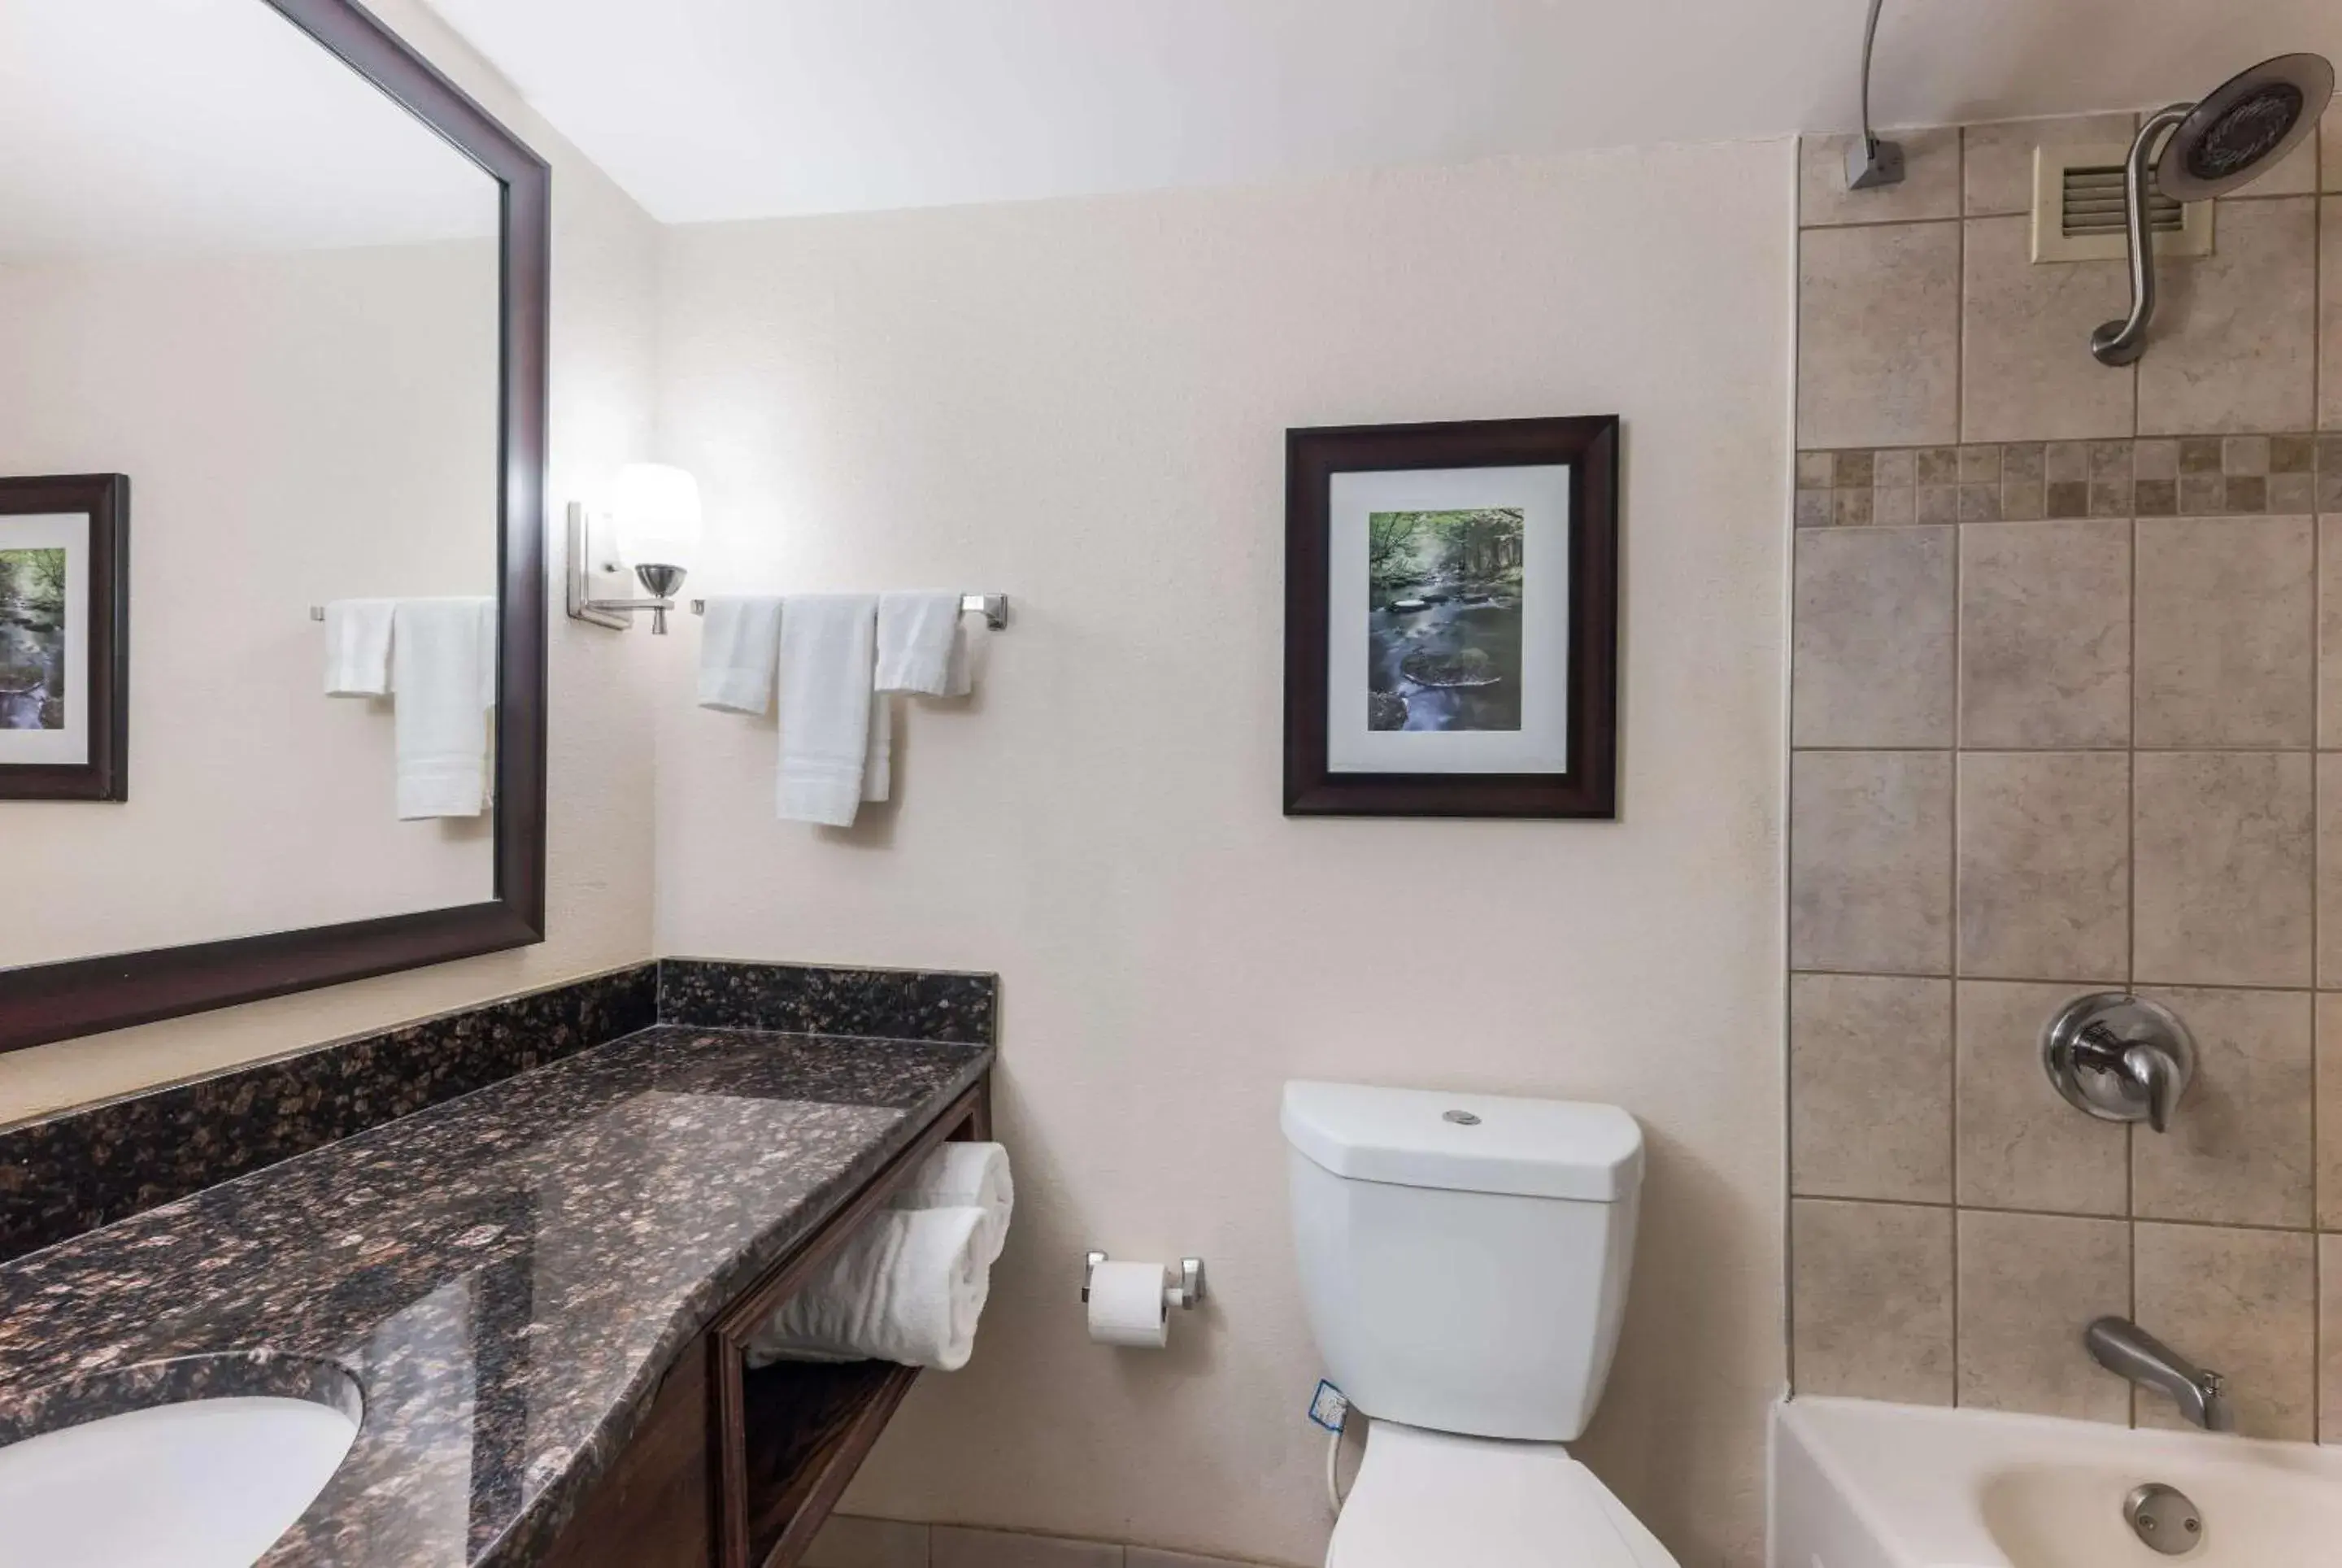 Bedroom, Bathroom in Clarion Hotel & Suites Mount Laurel